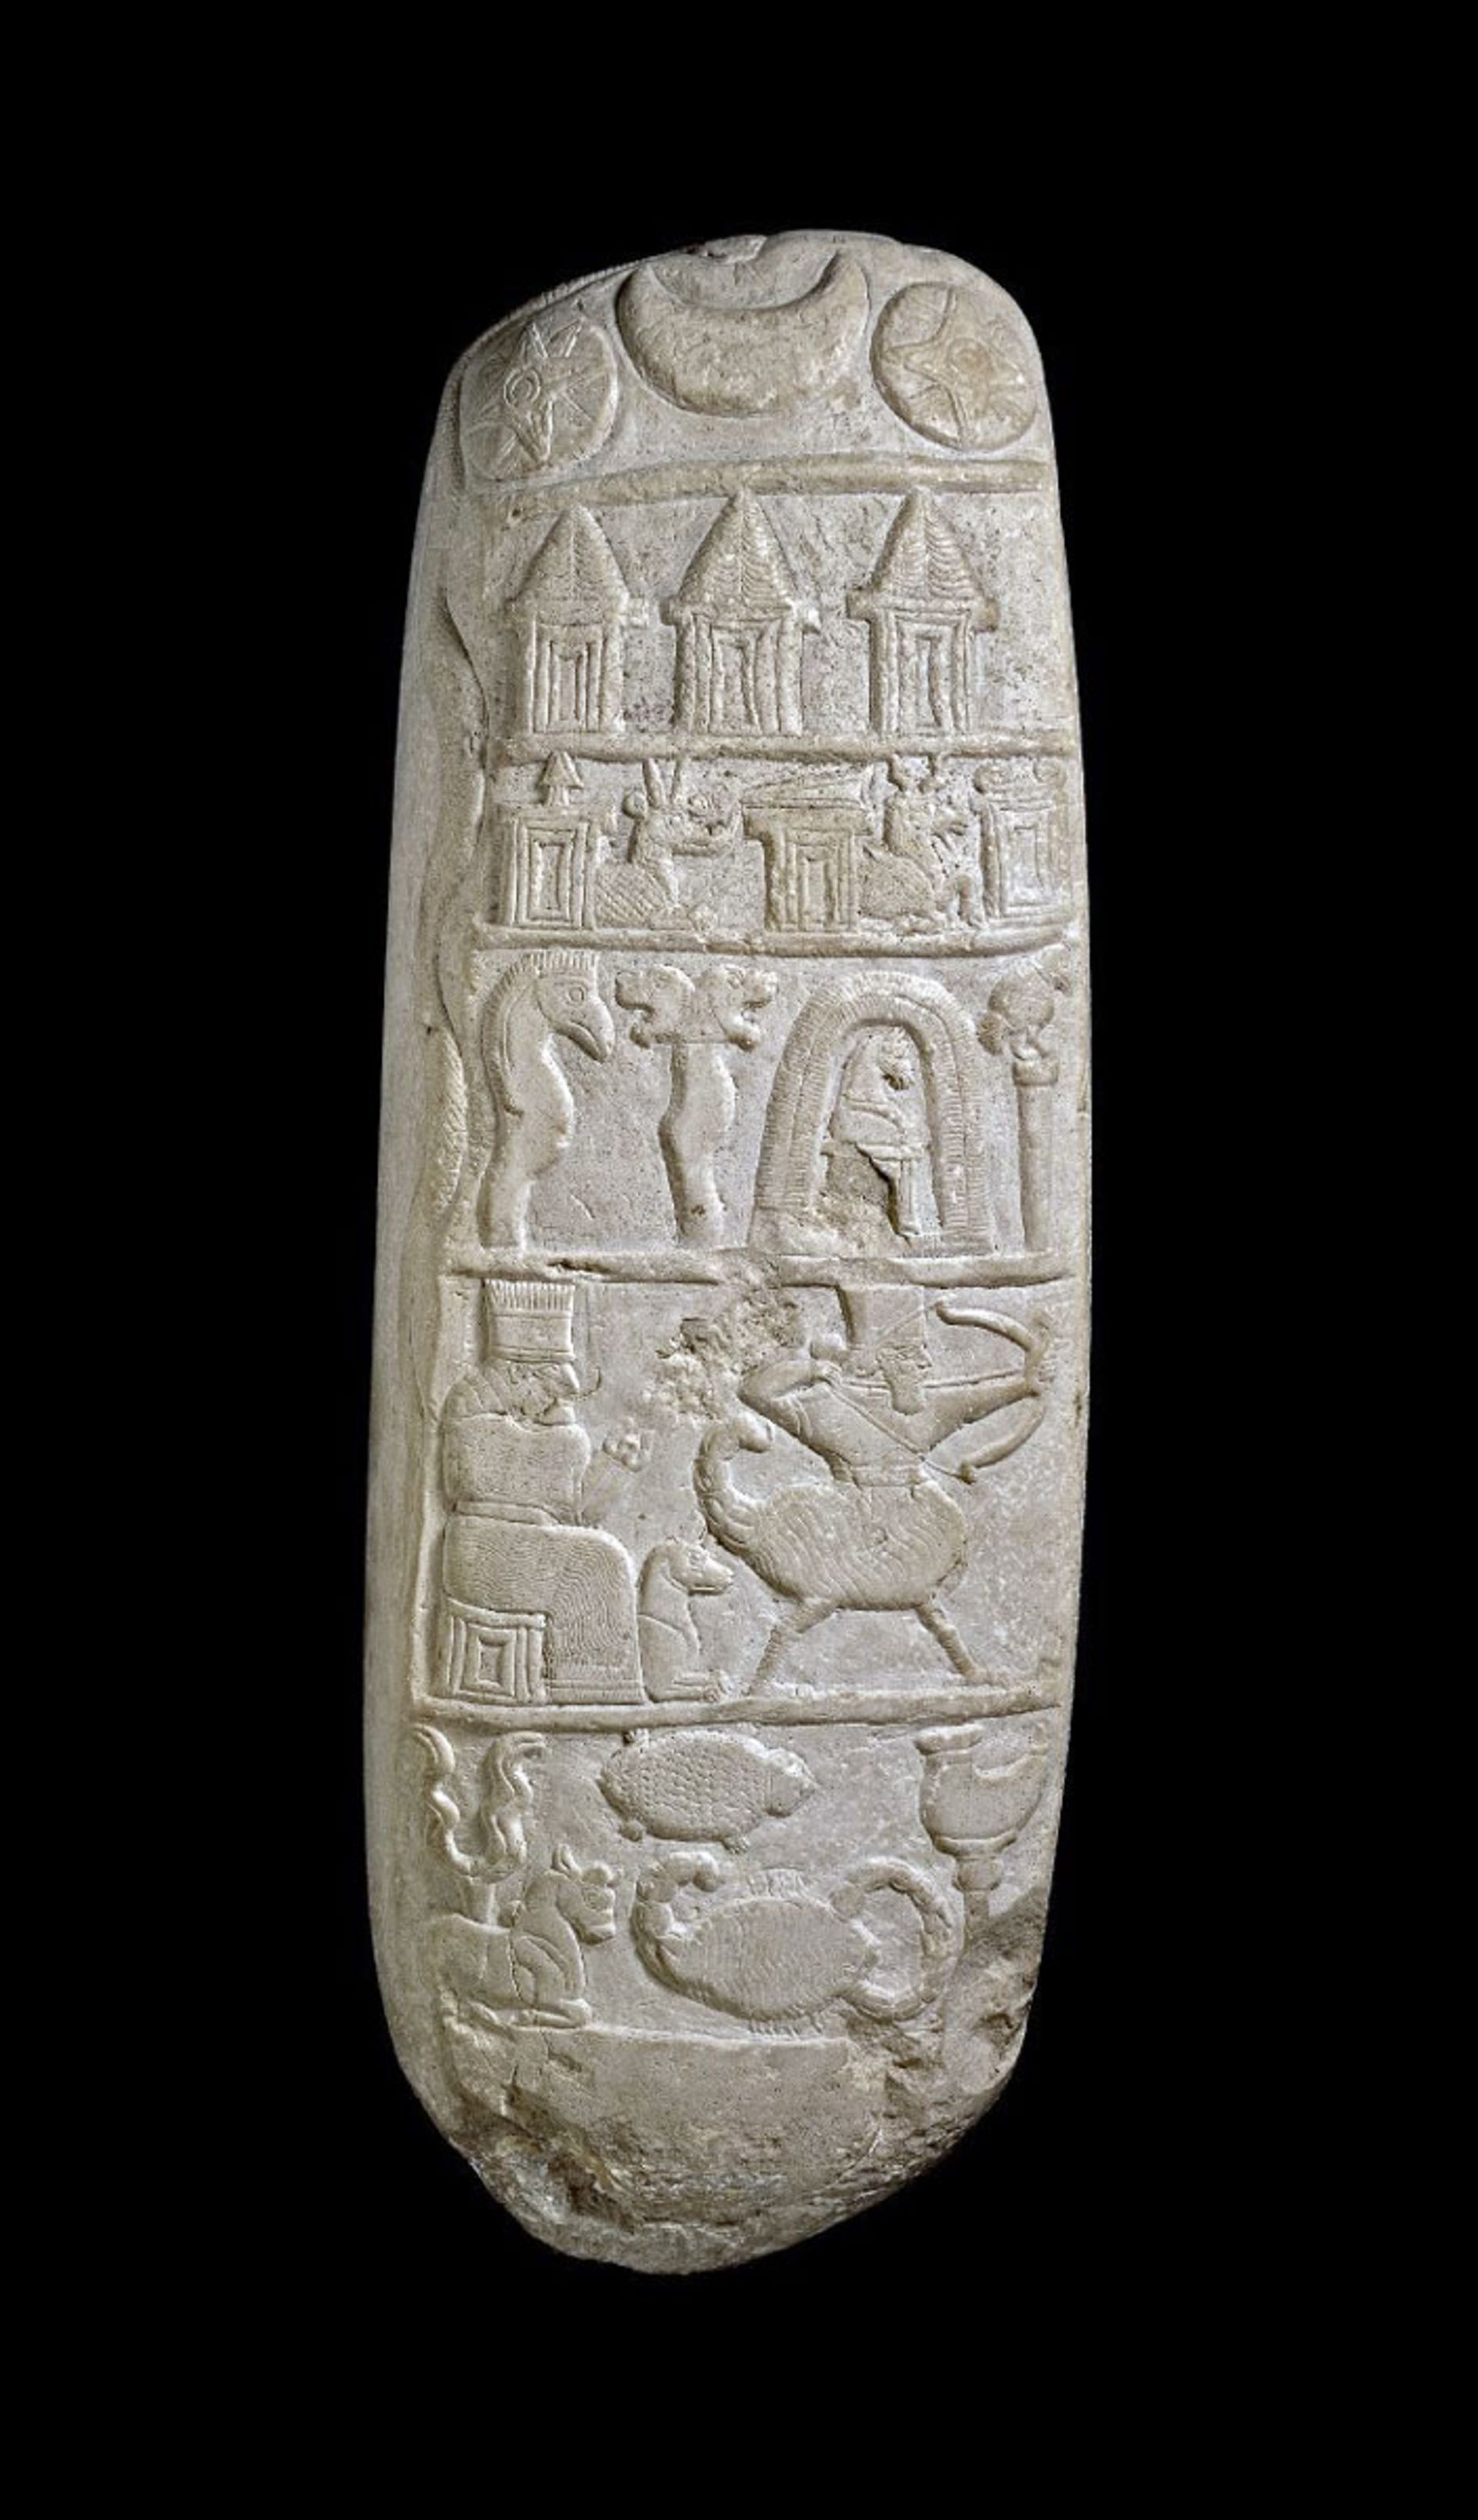 سنگ باستانی با خط میخی و تصاویر موجودات